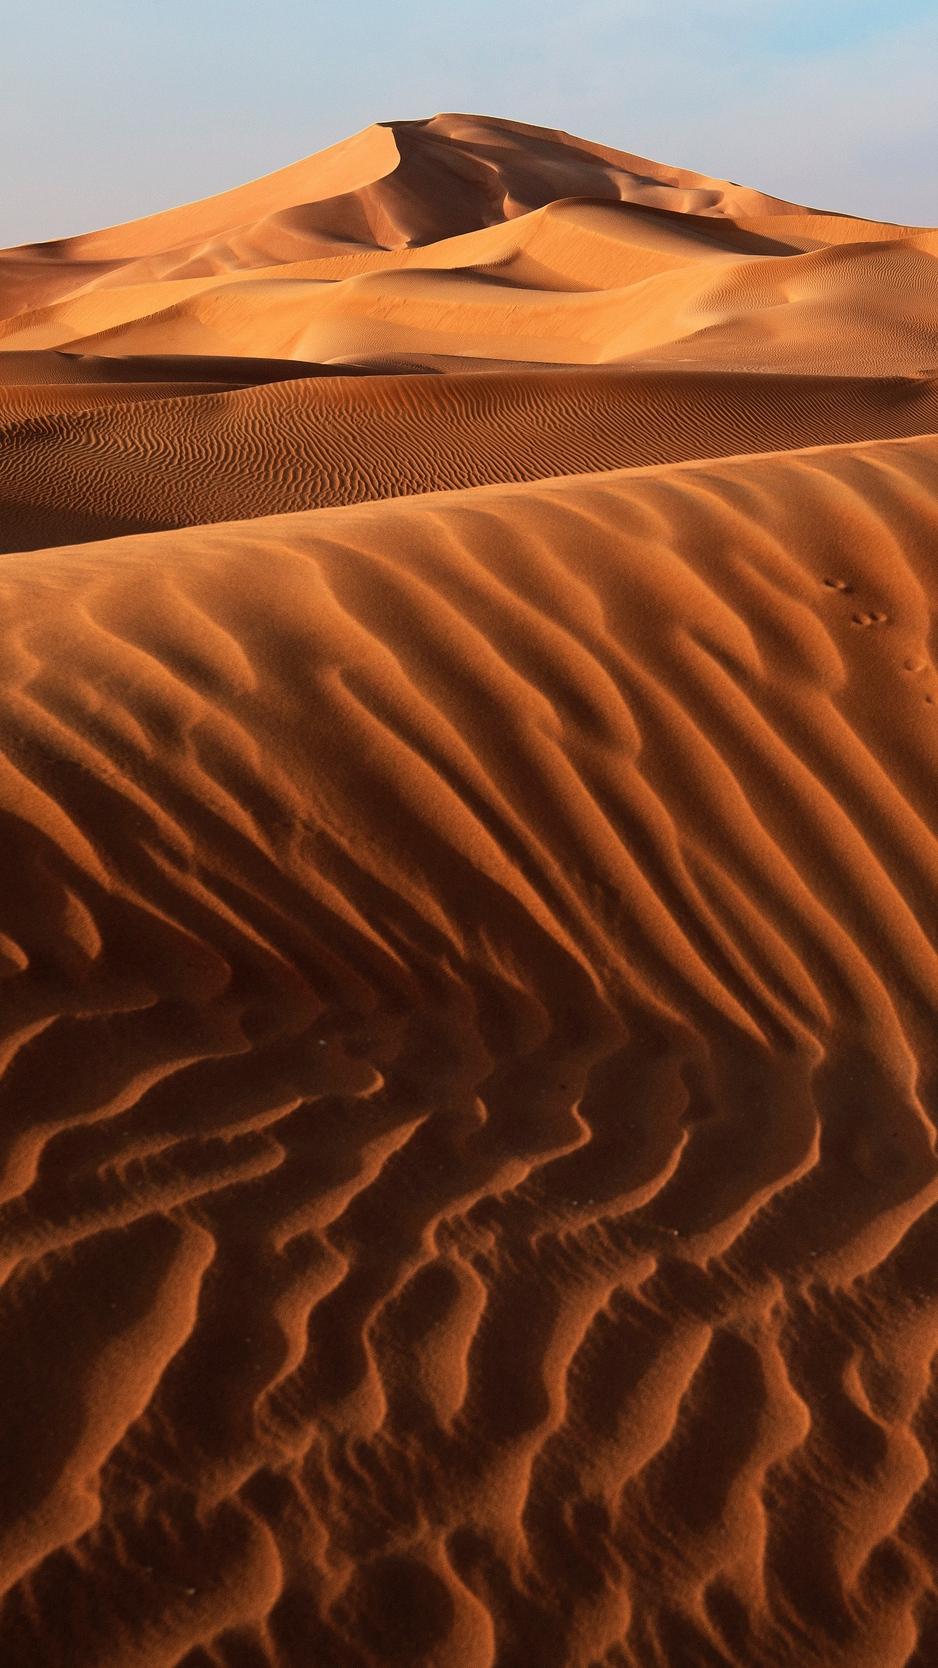 Download wallpaper 938x1668 desert, sand, dunes, relief, sky